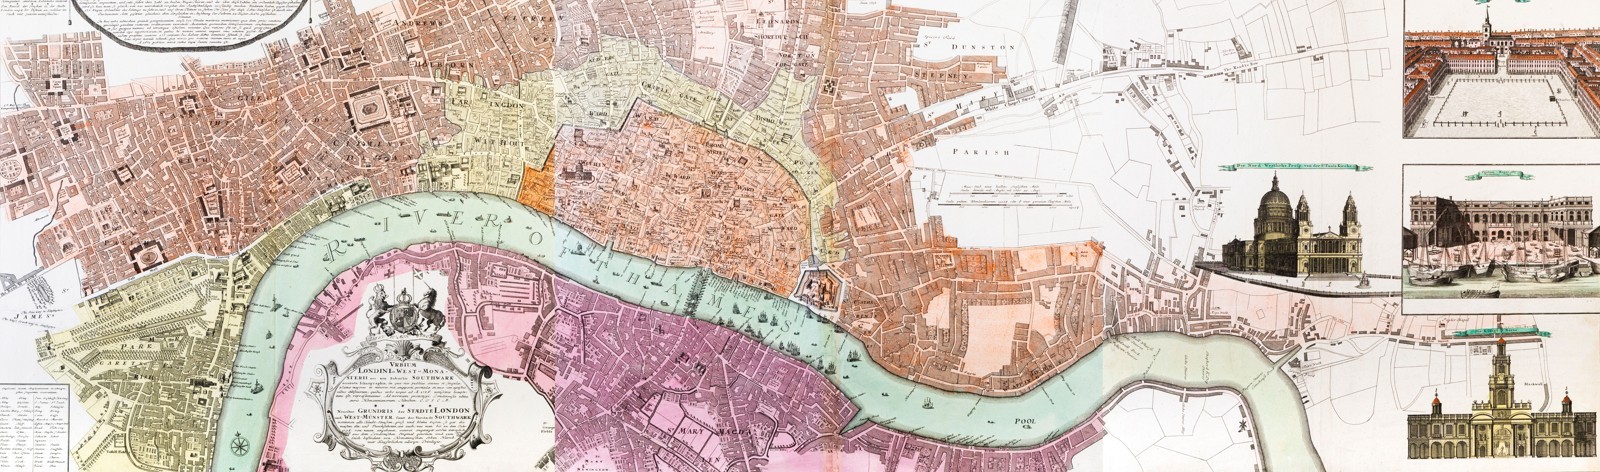 Třídílný plán Londýna (1736)